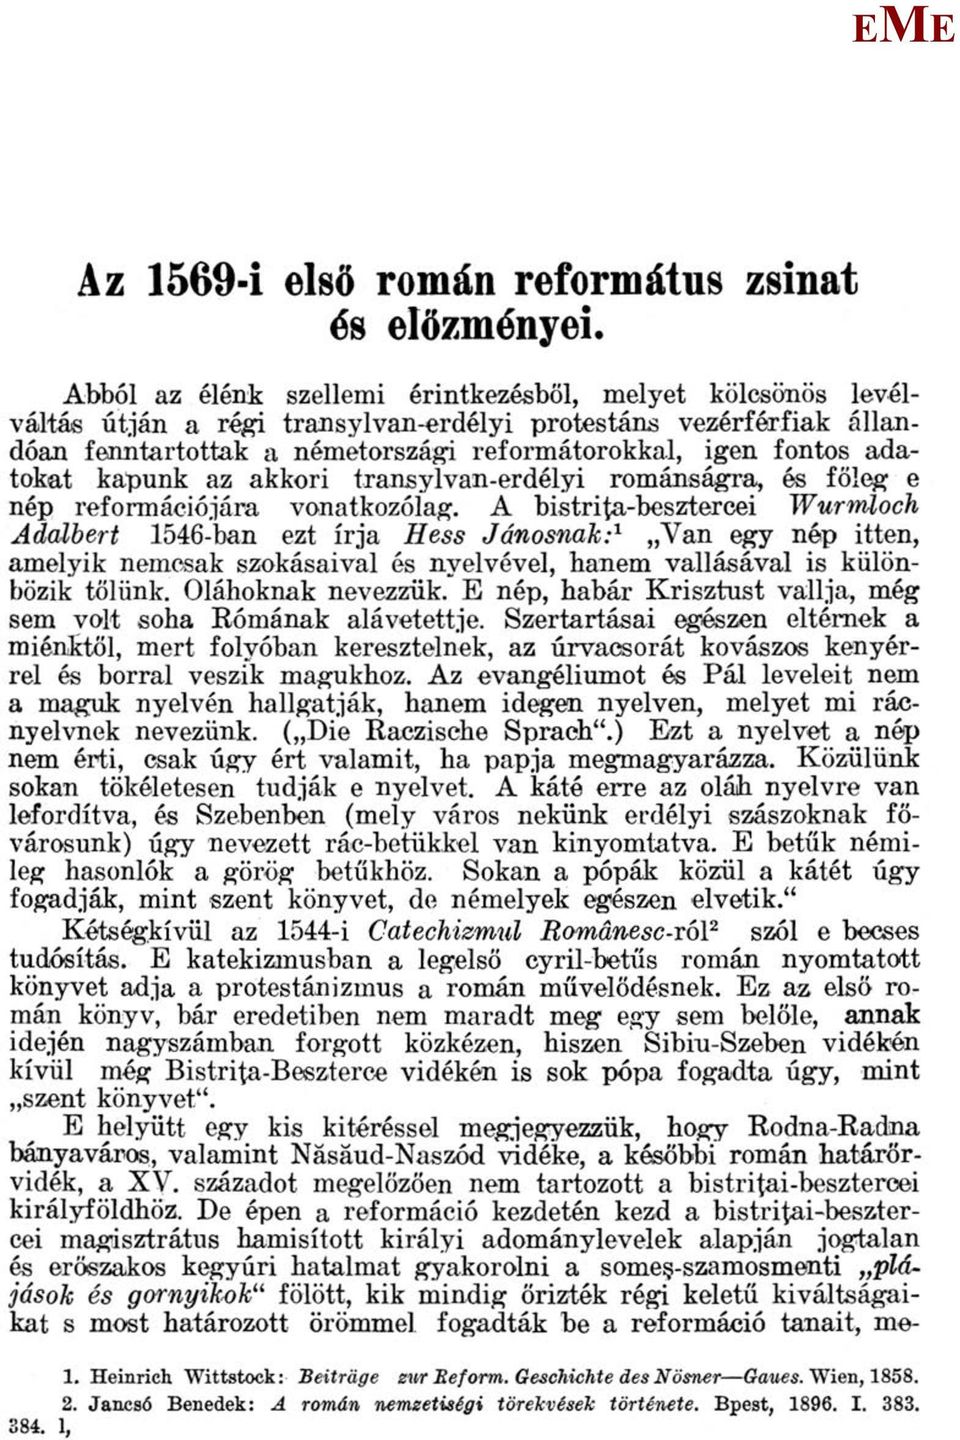 adatokat kapunk az akkori transylvan-erdélyi románságra, és főleg e nép reformációjára vonatkozólag.